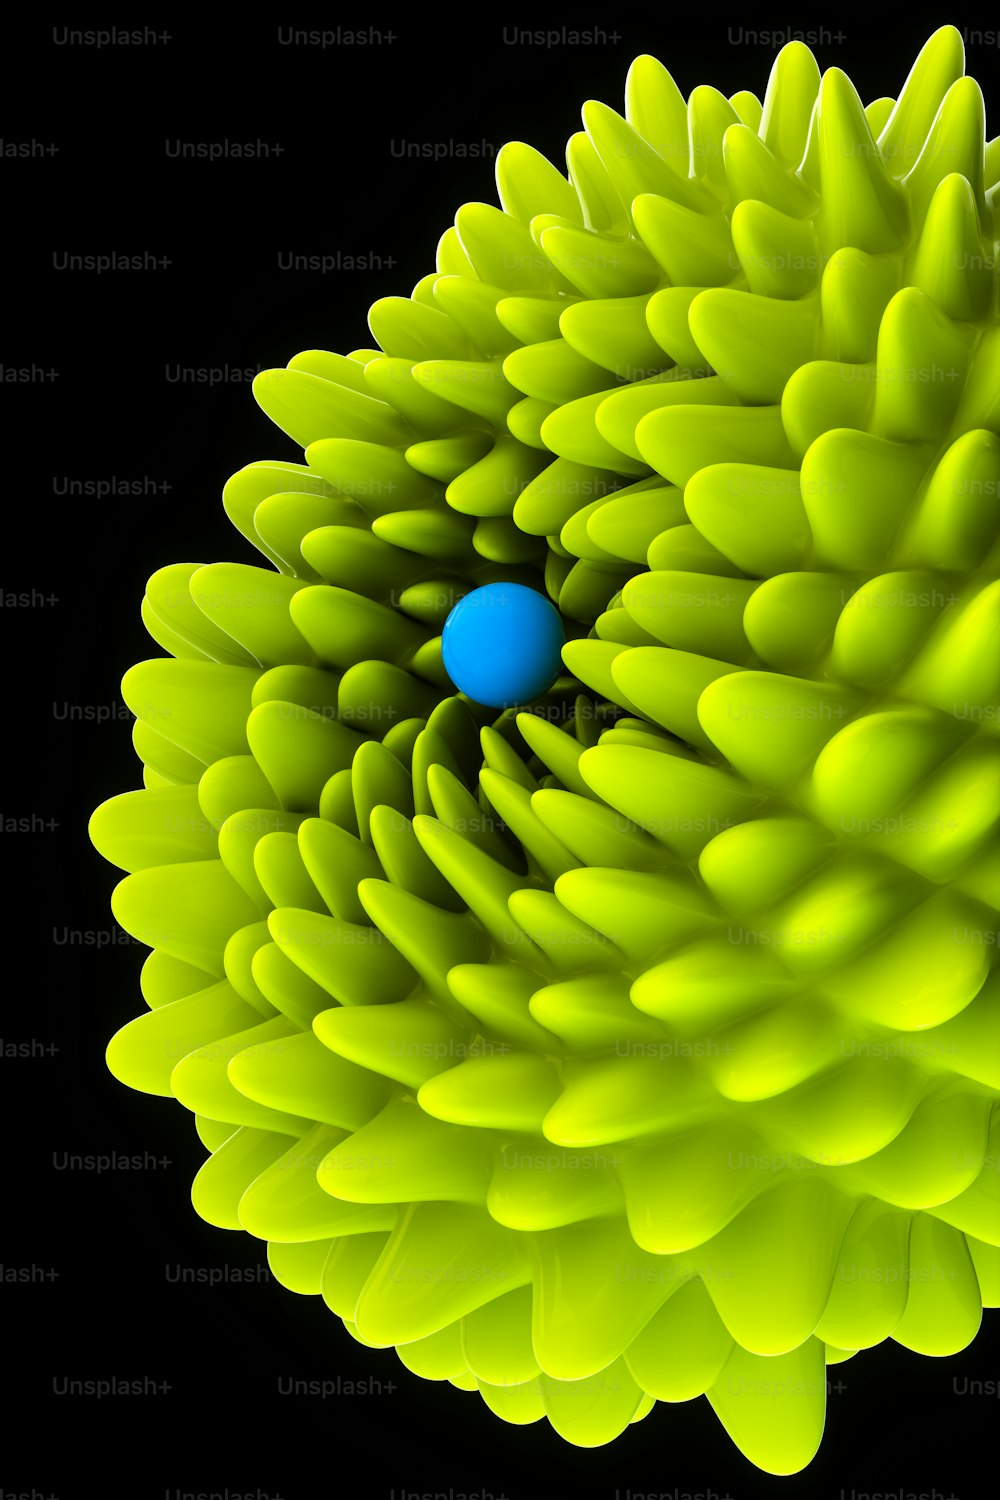 Una bola azul está en el centro de una flor amarilla